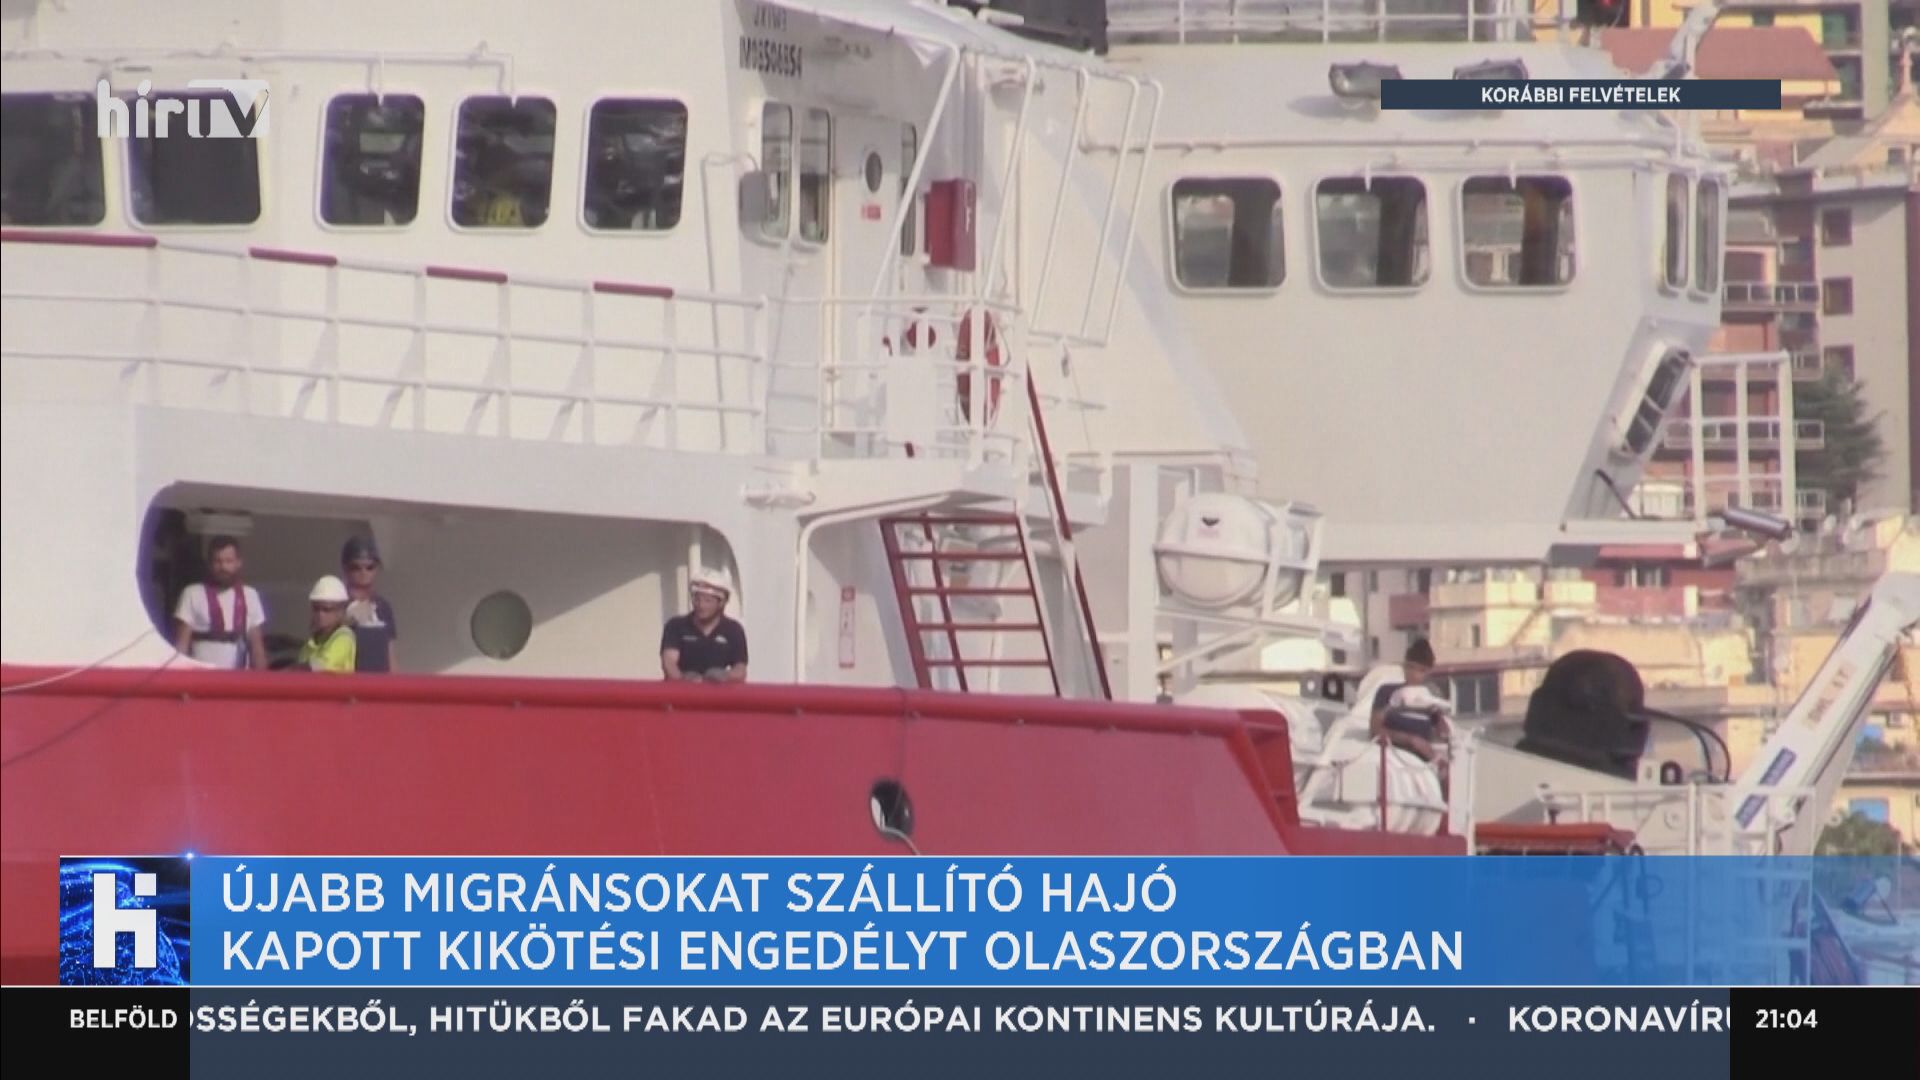 Újabb migránsokat szállító hajó kapott kikötési engedélyt Olaszországban